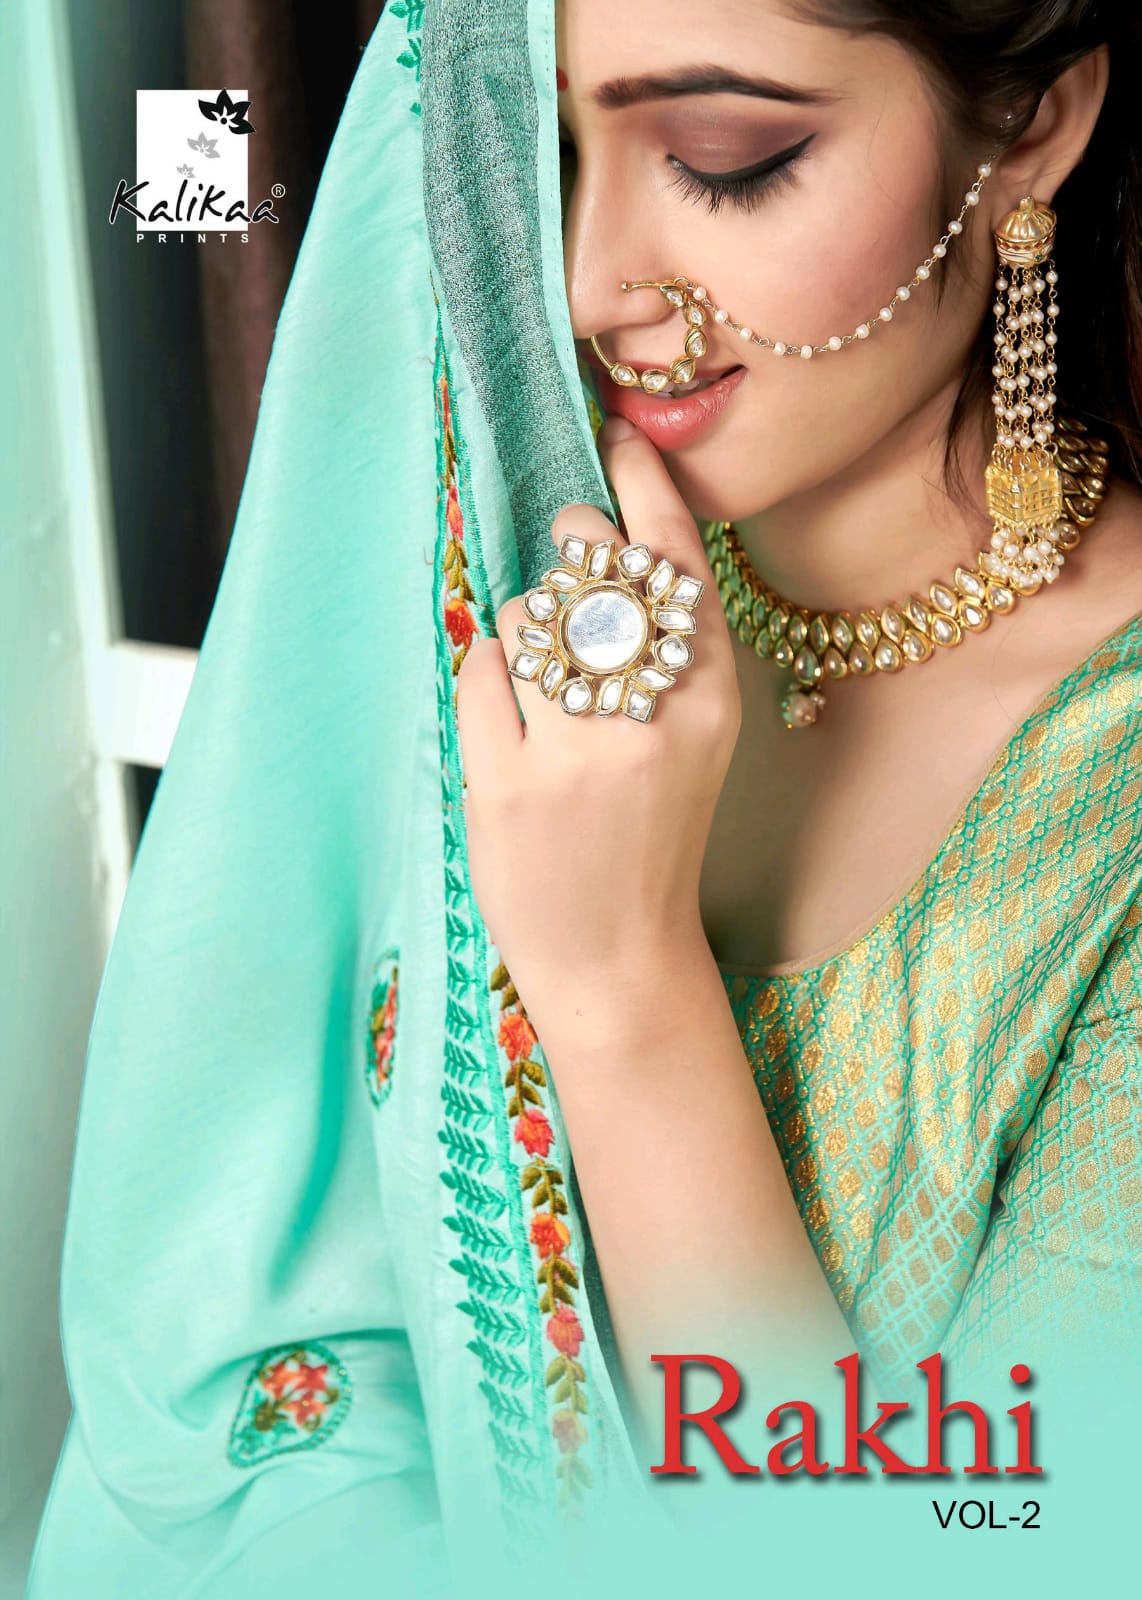 Kalika Prints Rakhi Vol 2 Stunning Looks Designer Saris Buy Online Shopping In India